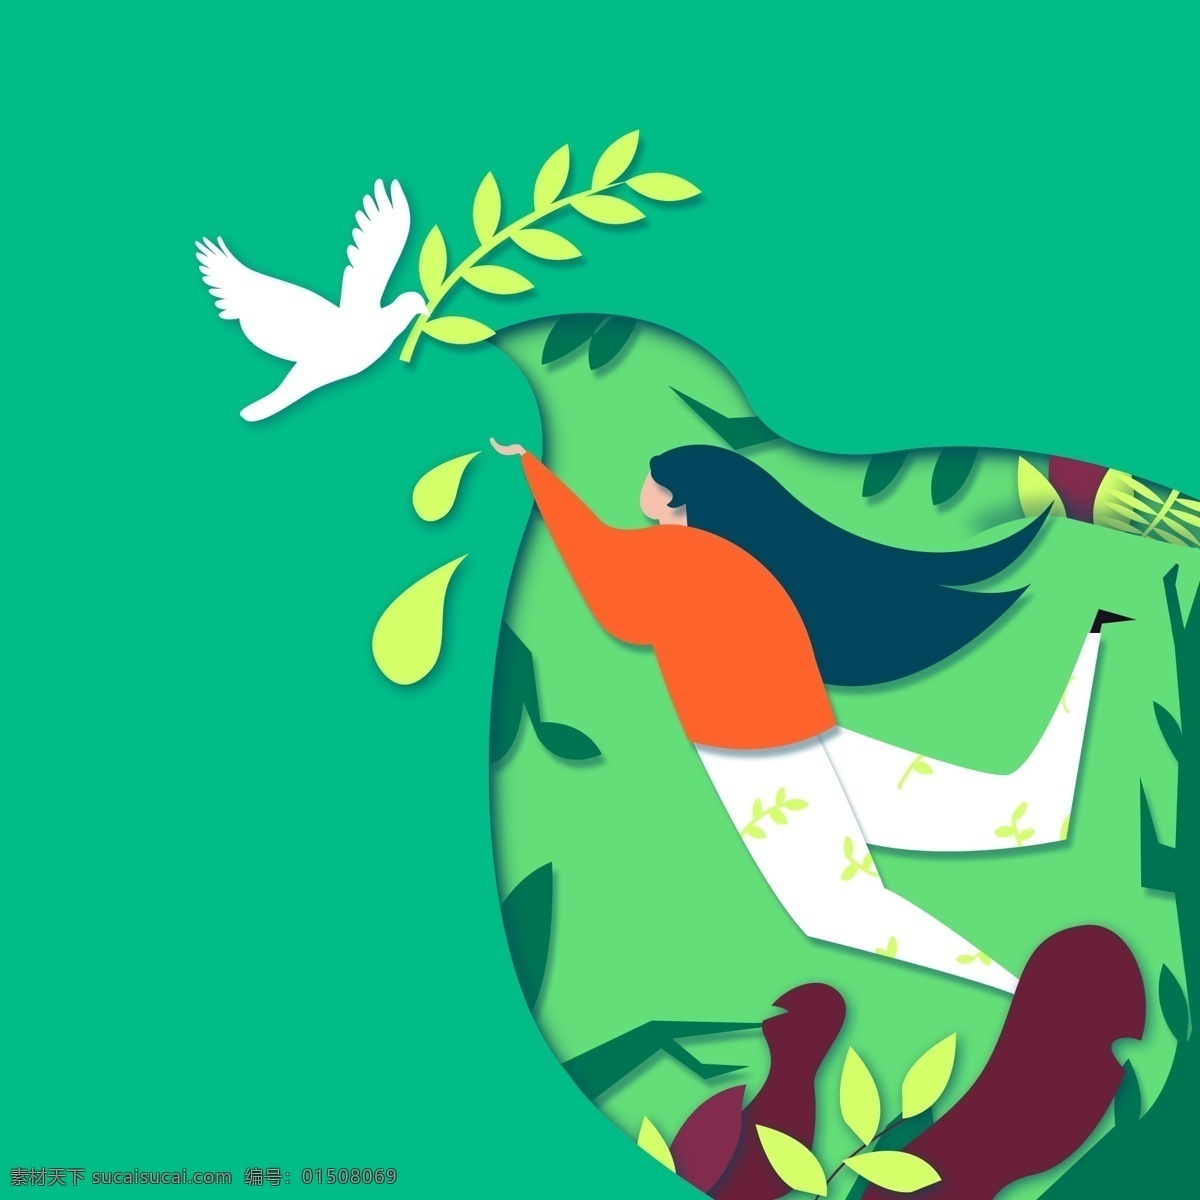 世界 平日 和平鸽 橄榄枝 手绘 剪纸 矢量 鸽子 绿色 世界和平日 和平